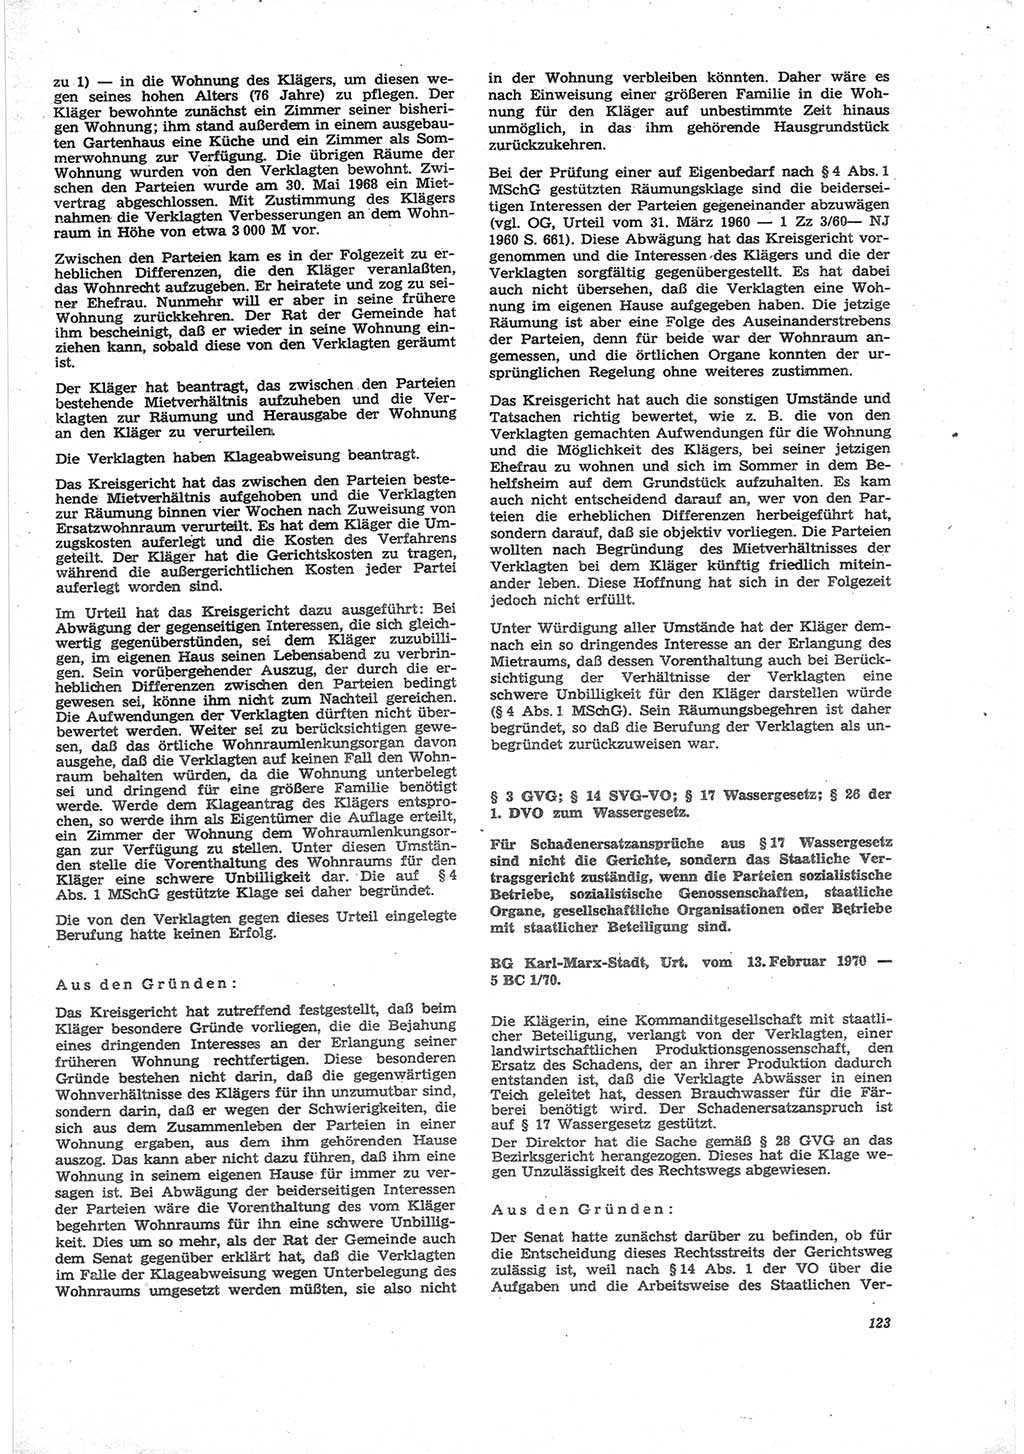 Neue Justiz (NJ), Zeitschrift für Recht und Rechtswissenschaft [Deutsche Demokratische Republik (DDR)], 25. Jahrgang 1971, Seite 123 (NJ DDR 1971, S. 123)